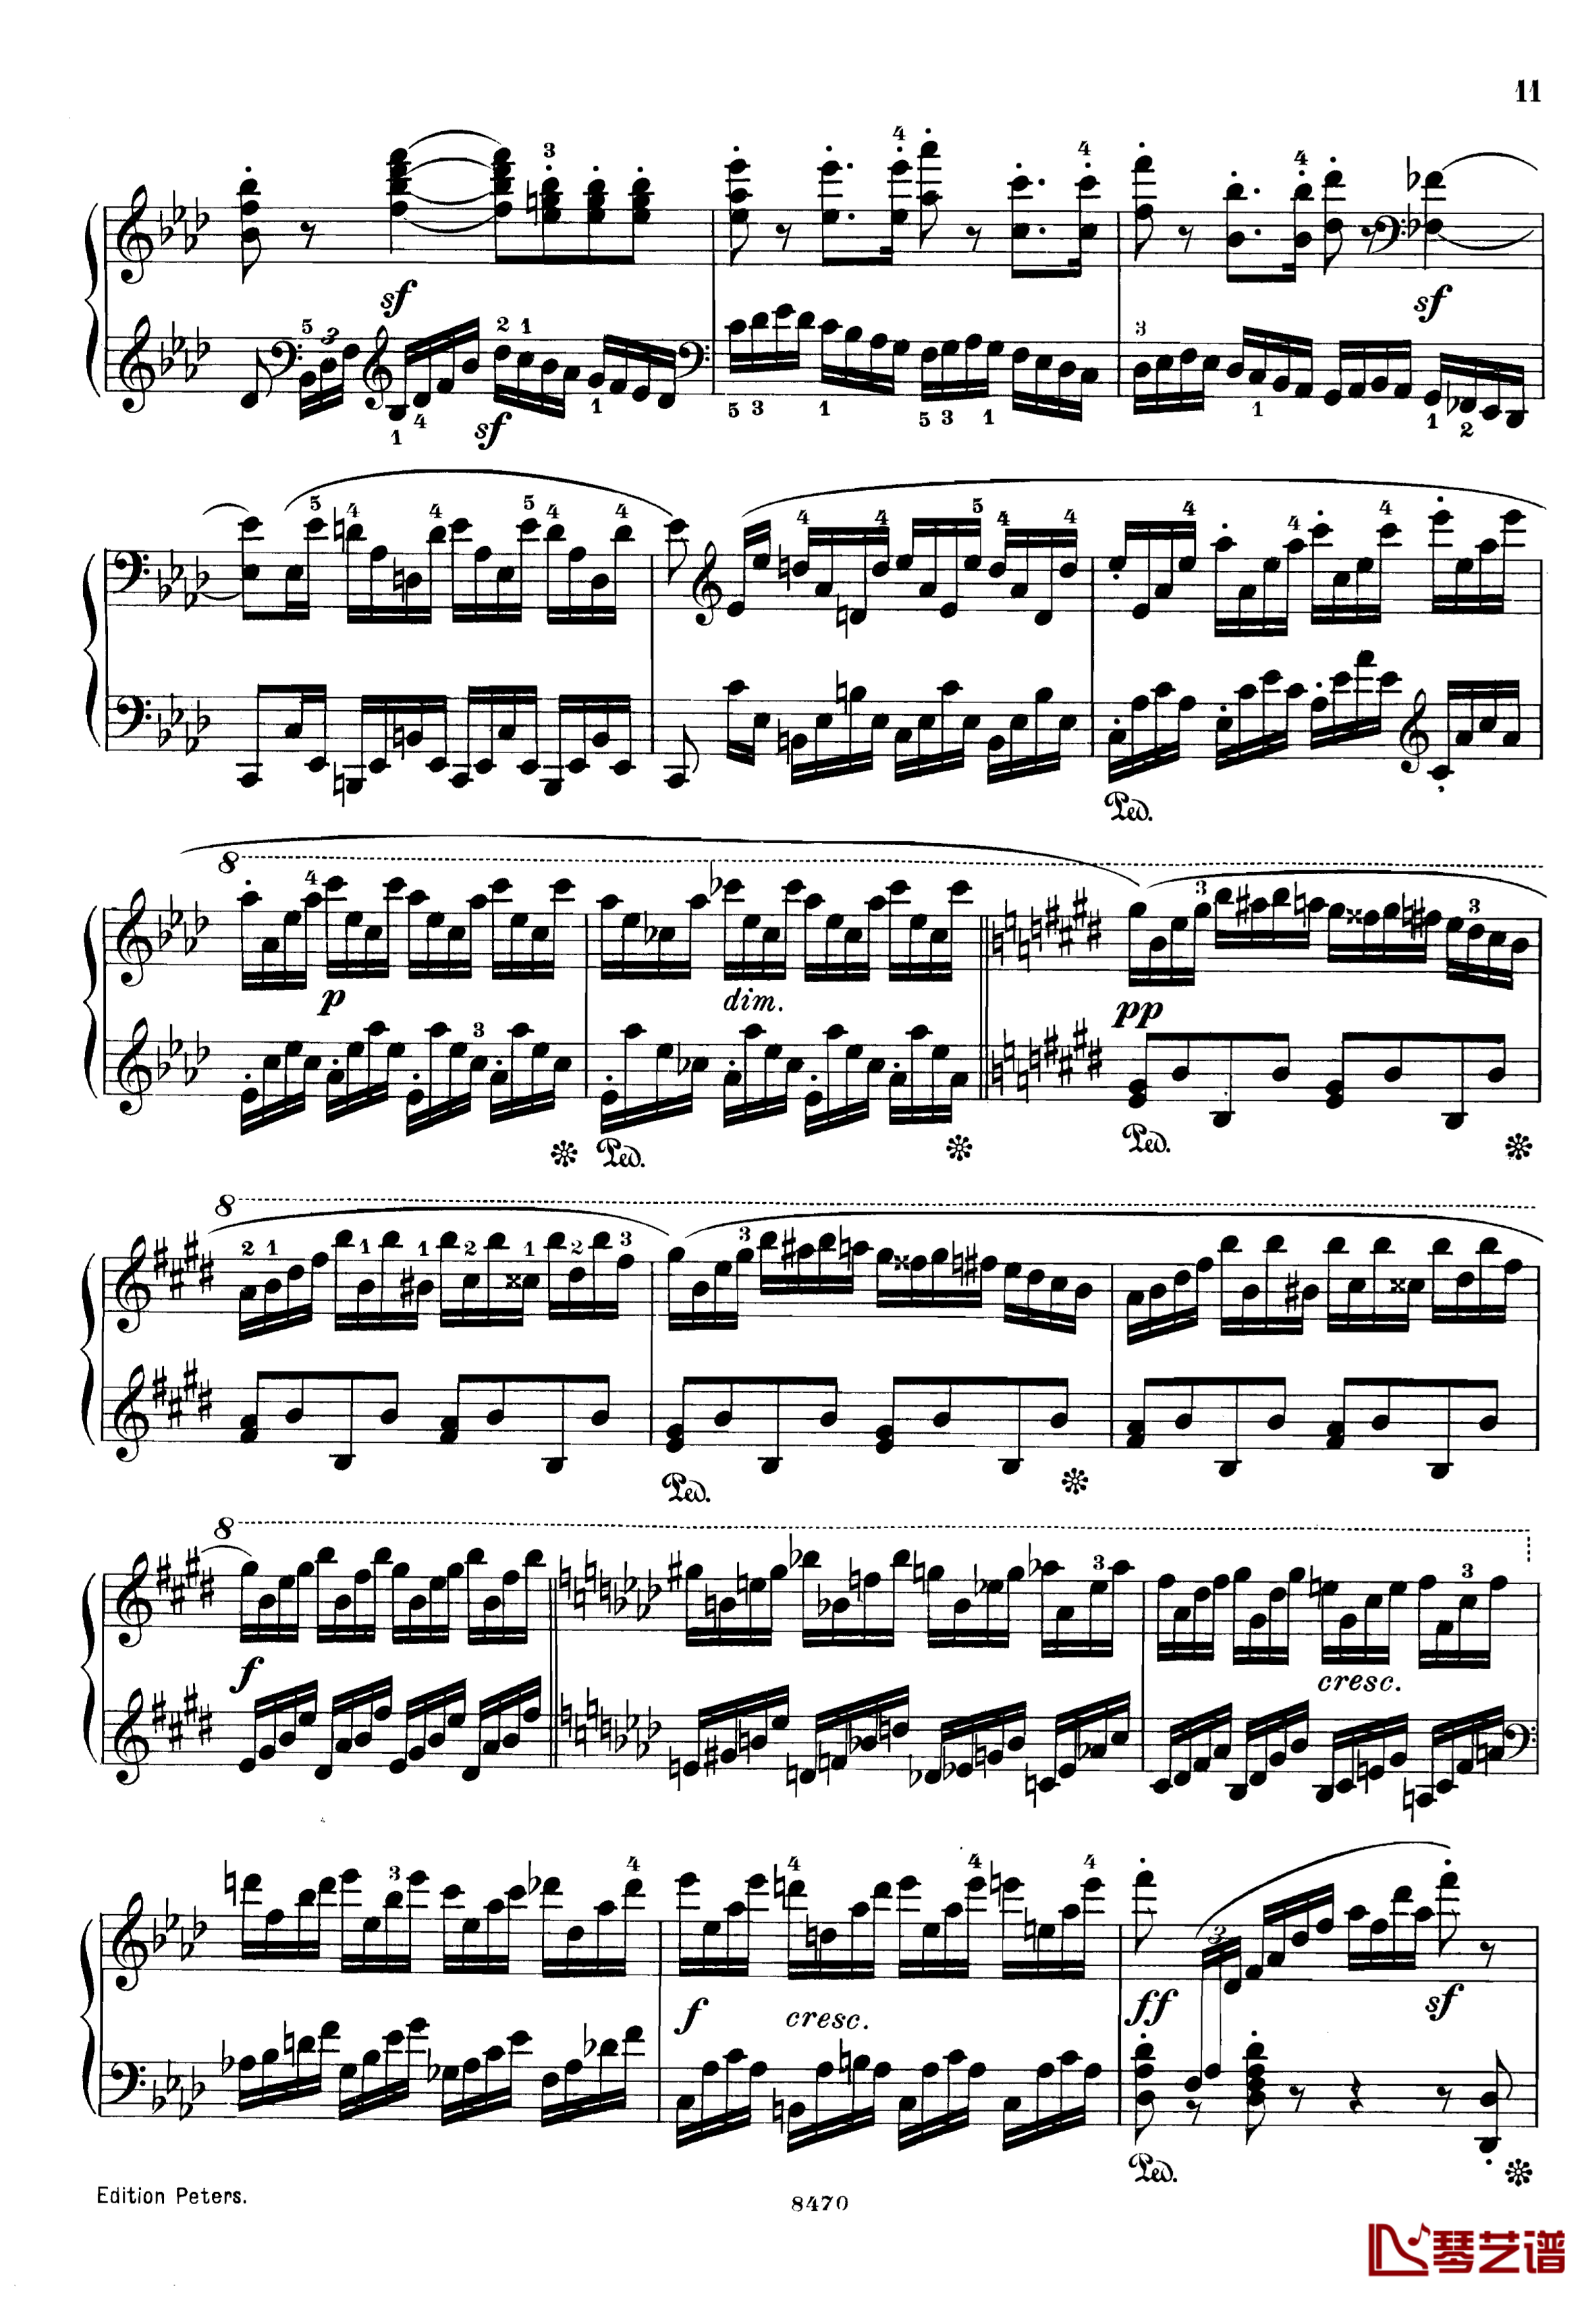 升c小调第三钢琴协奏曲Op.55钢琴谱-克里斯蒂安-里斯11